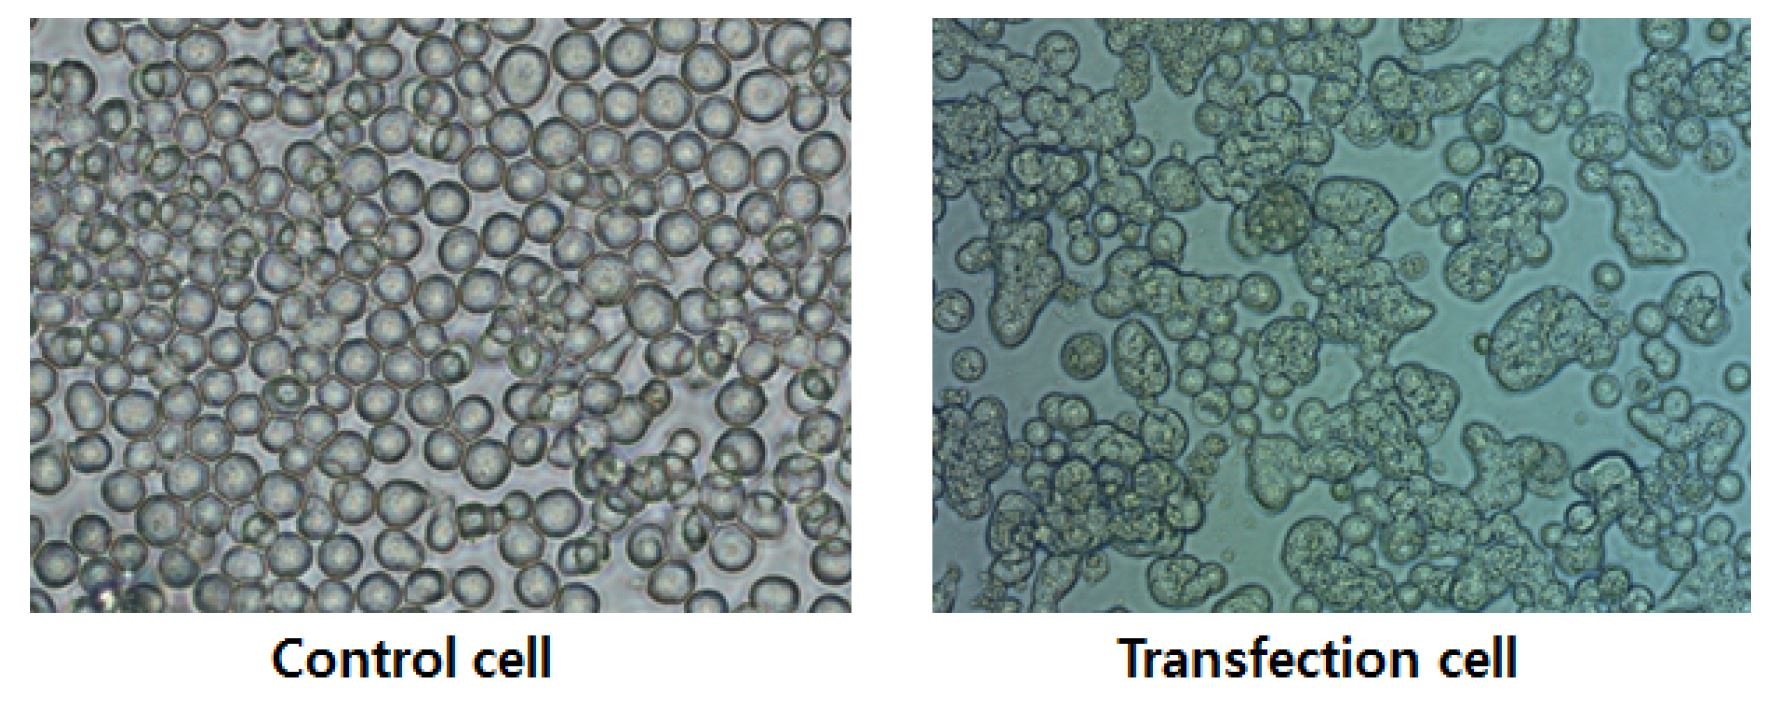 그림 26. 바이러스 생산에 따른 세포의 모양 변화 확인